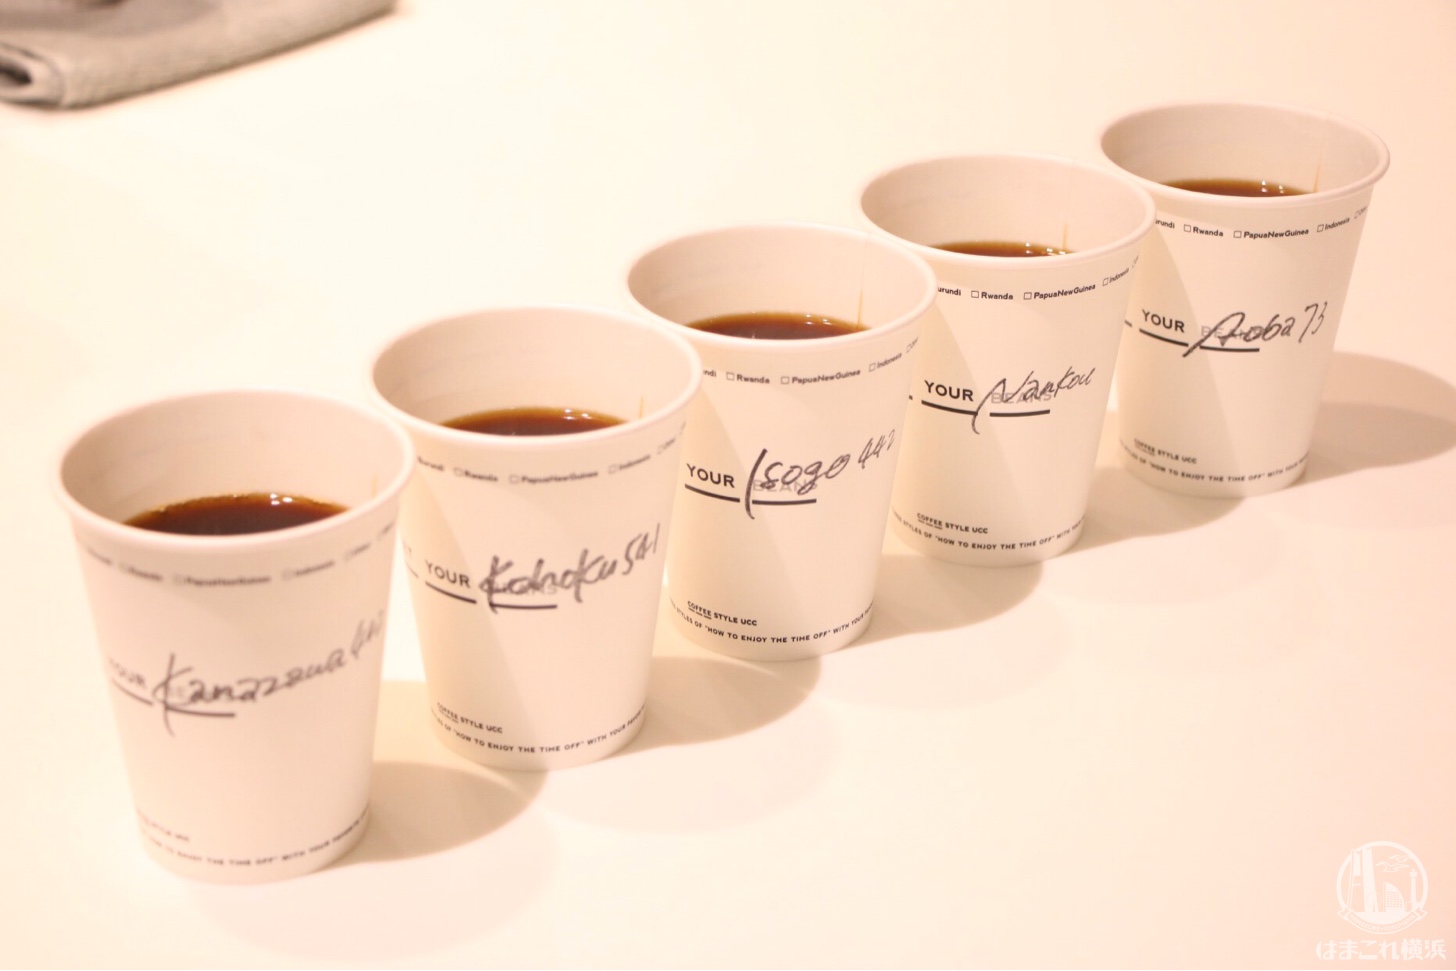 コーヒースタイルUCC 横浜がフード×コーヒーの選び方を新提案！横浜市をイメージしたコーヒーも